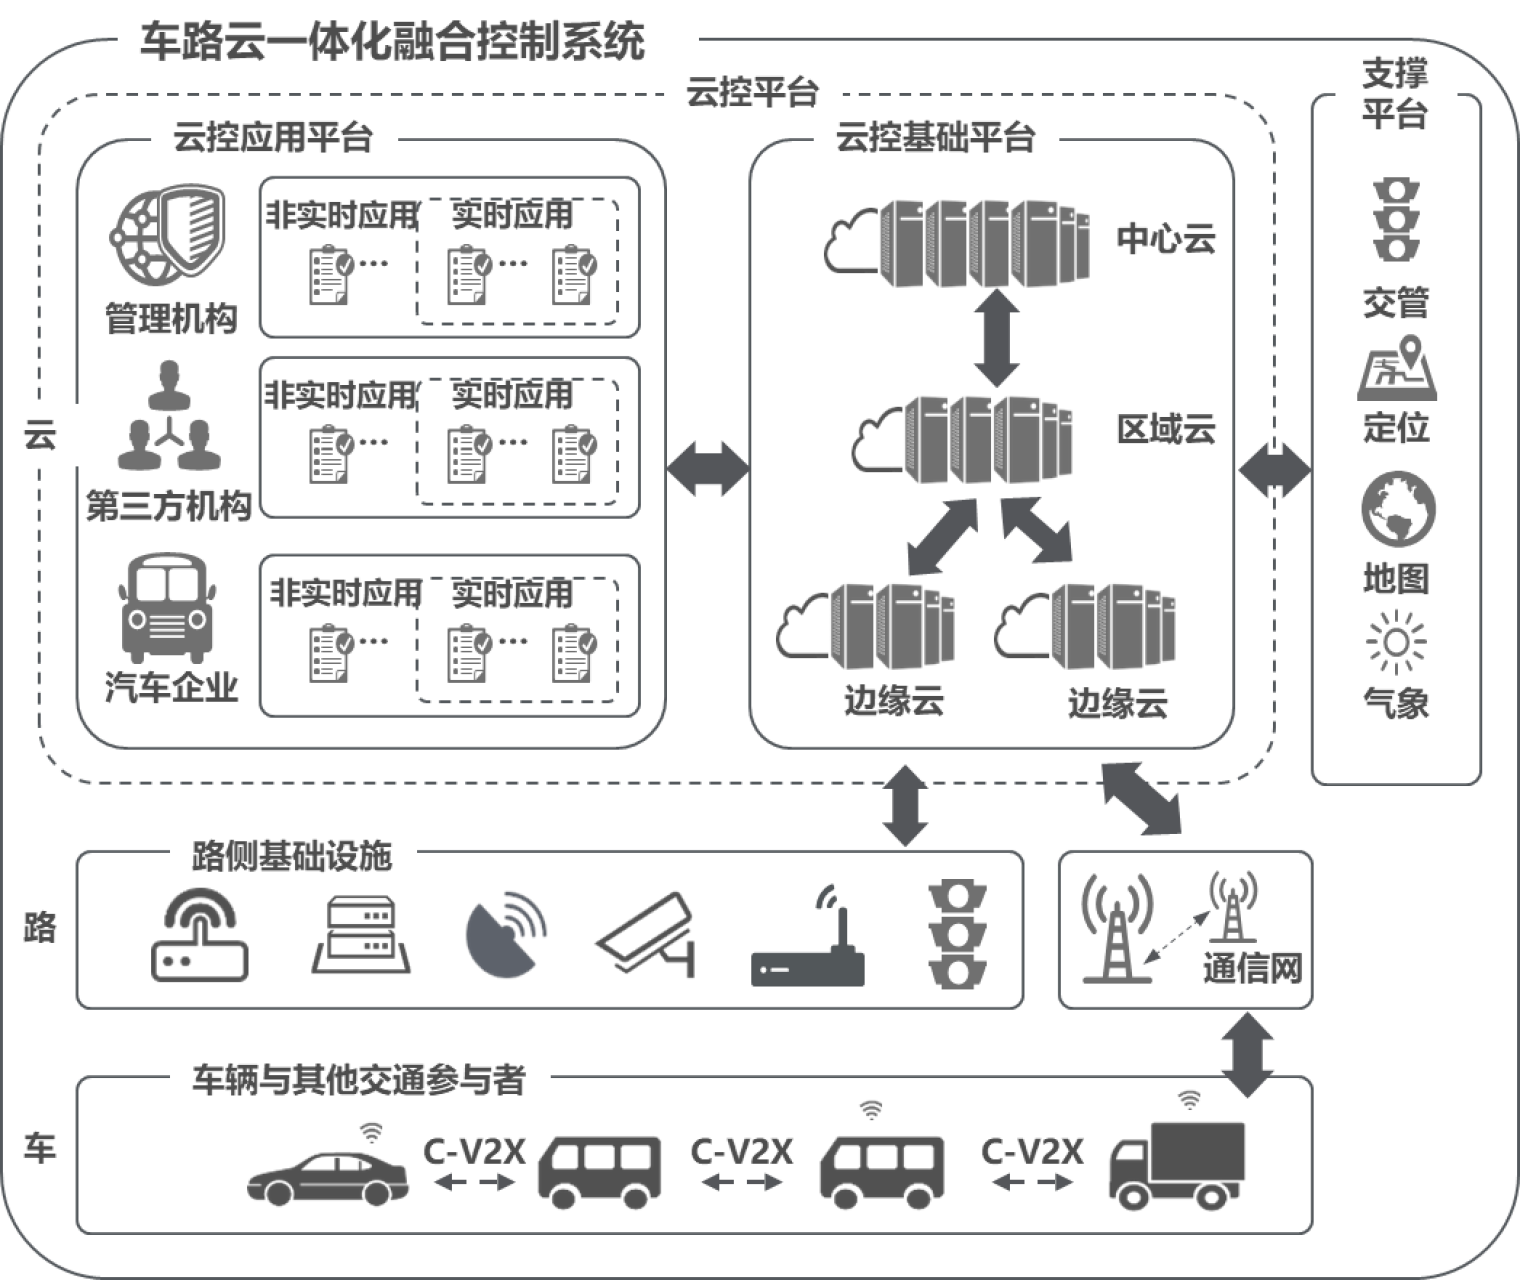 车路云一体化方案体系架构（来自《车路云一体化融合控制系统白皮书》）图2.png